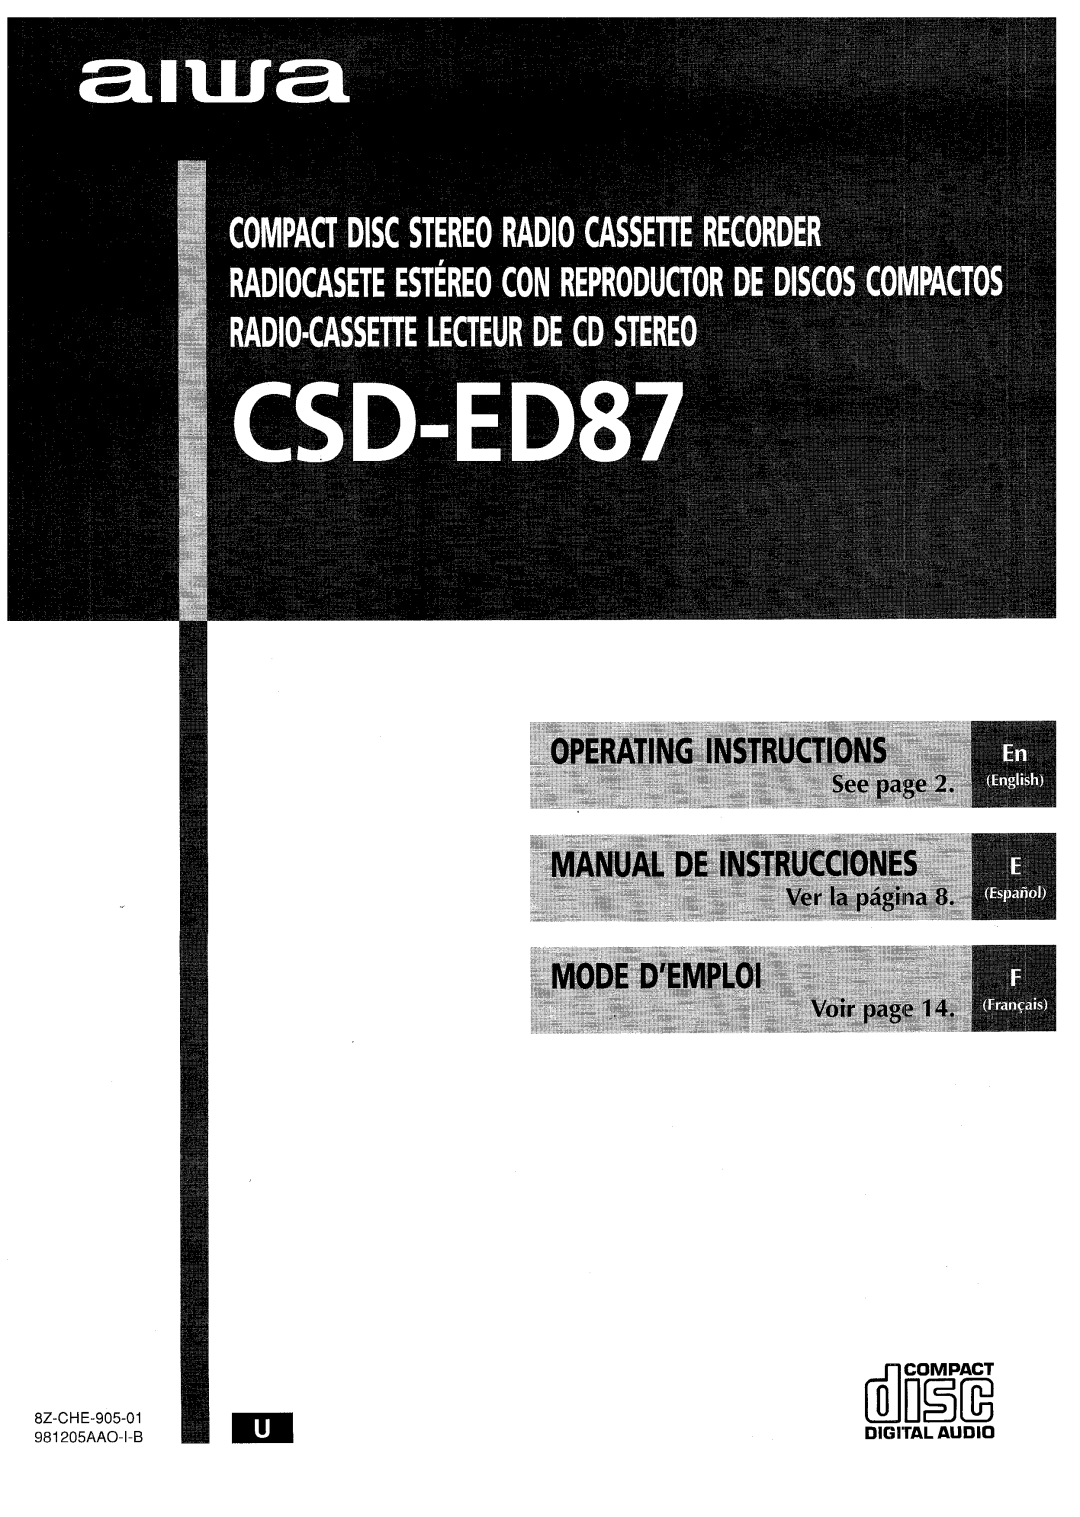 Aiwa CSD-ED87 manual Digital Audio, ilEiiE 